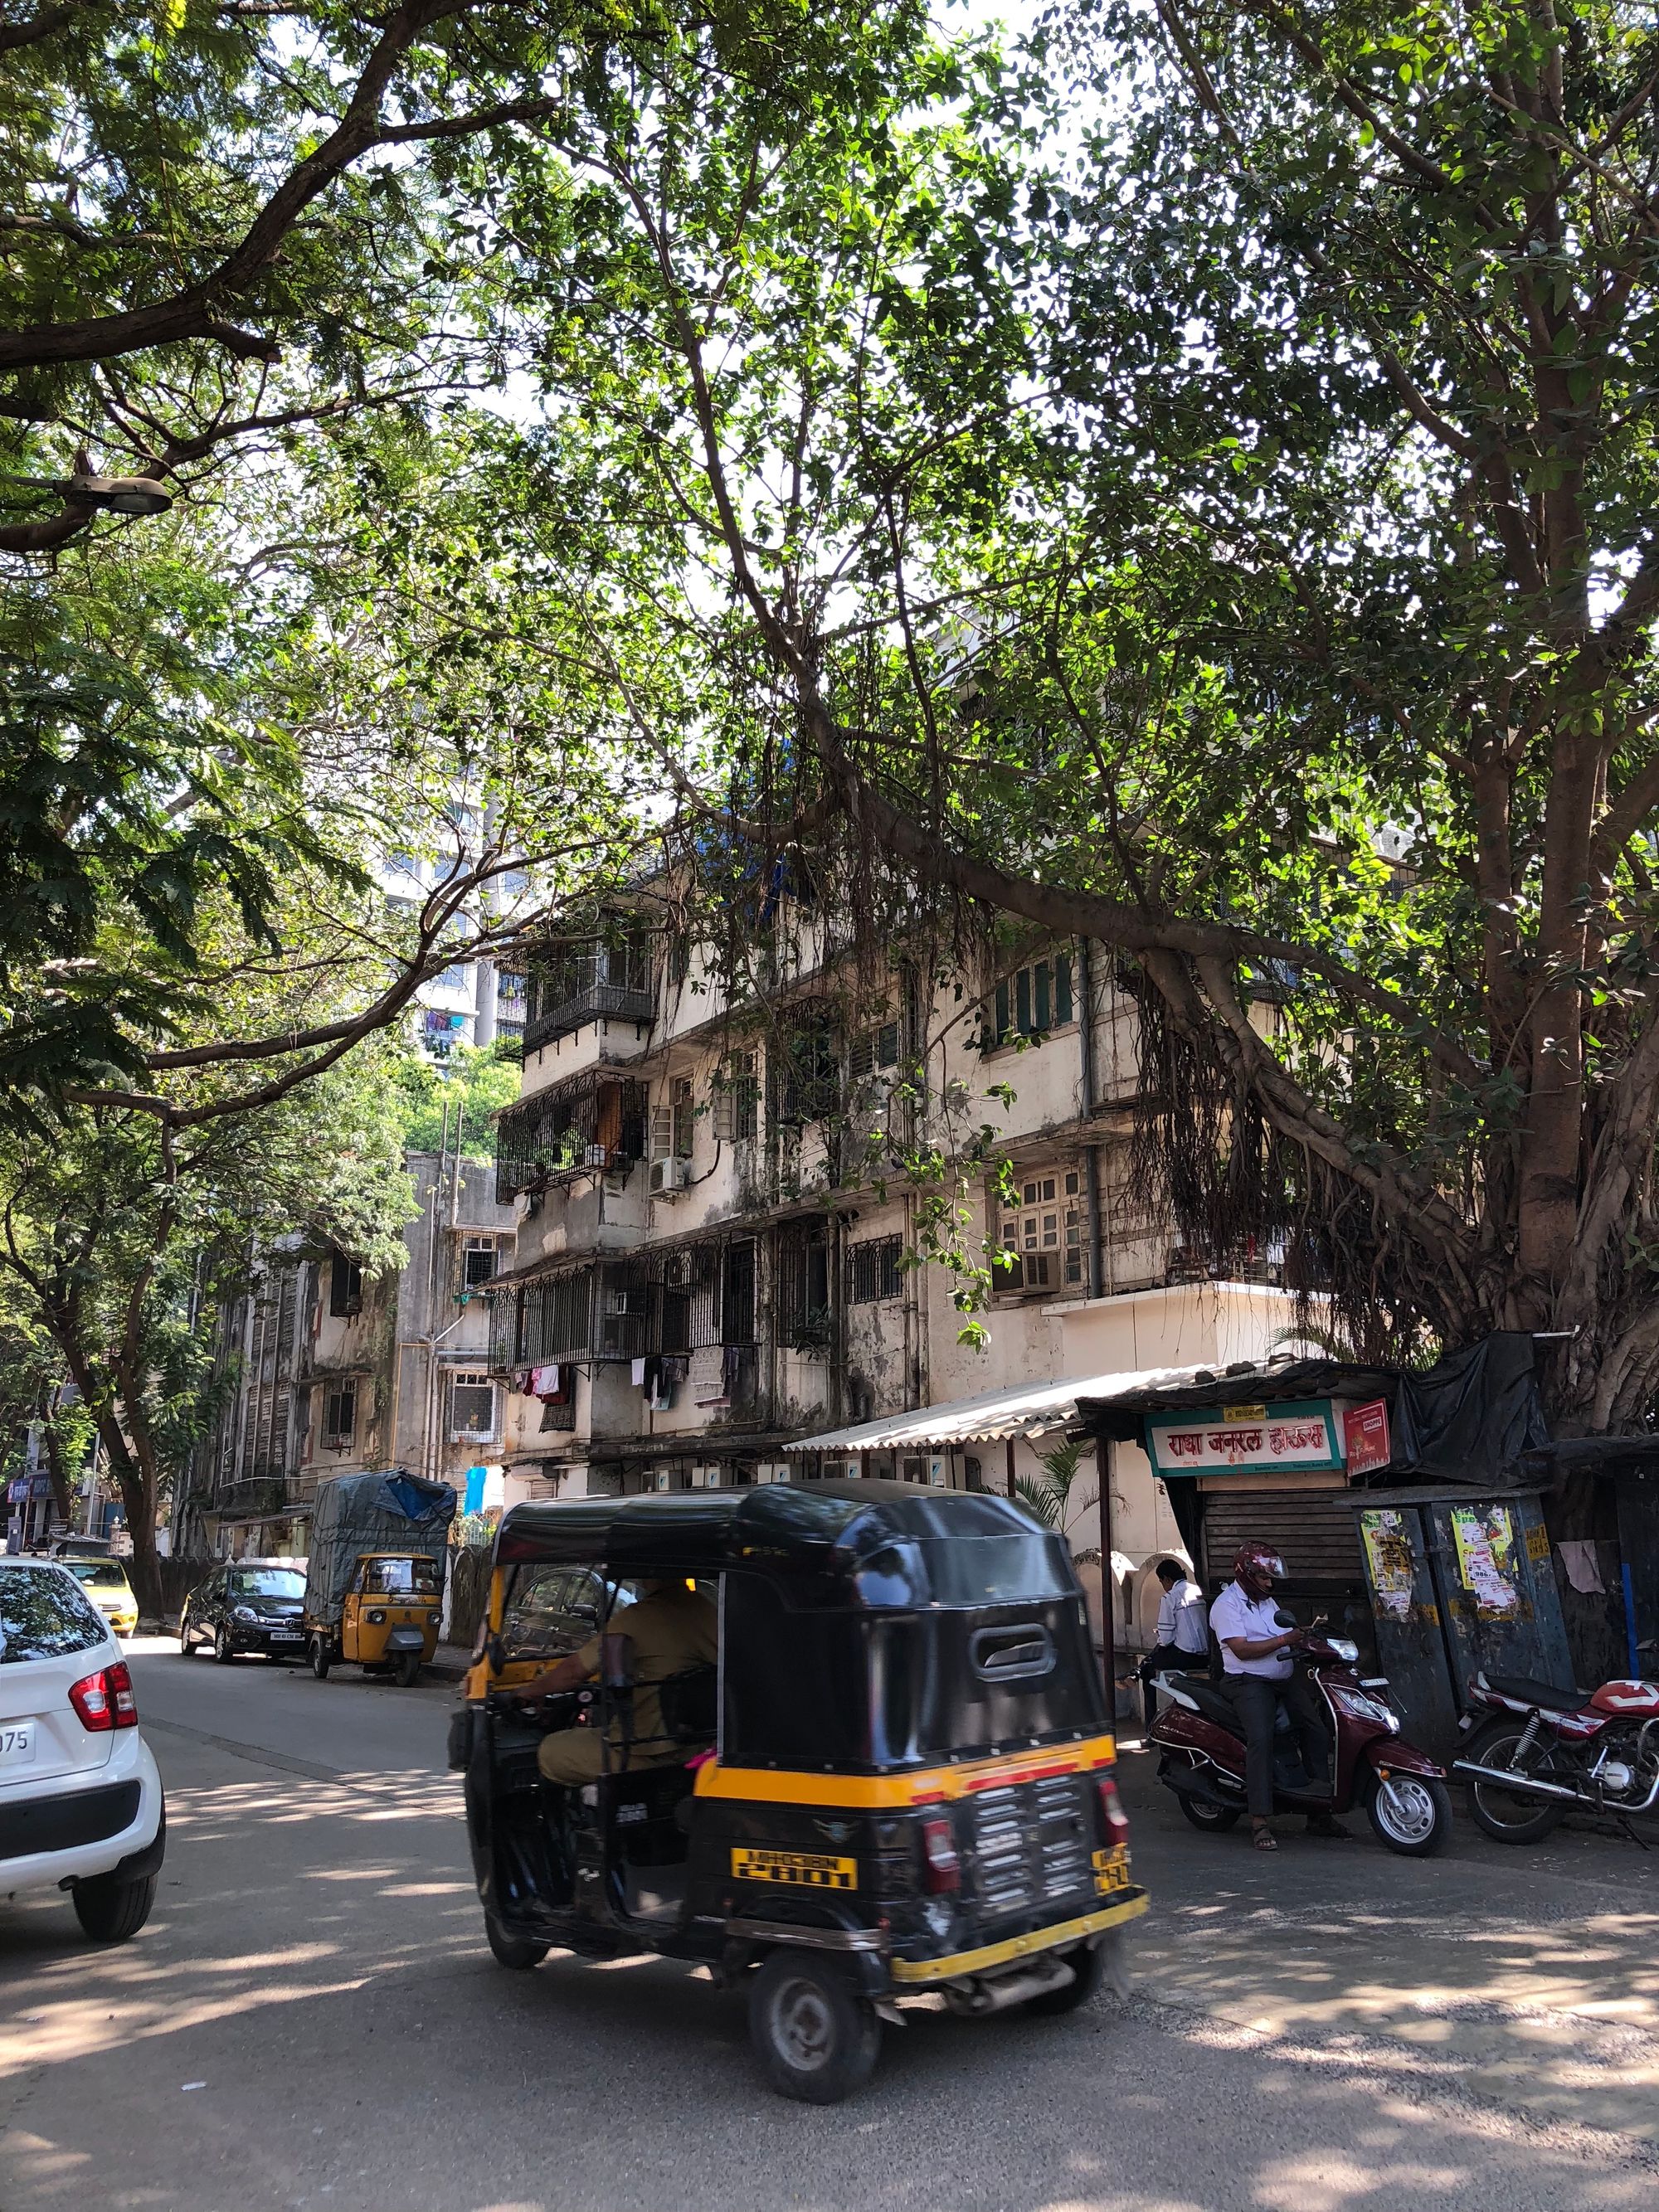 Mumbai: A City of Extremes